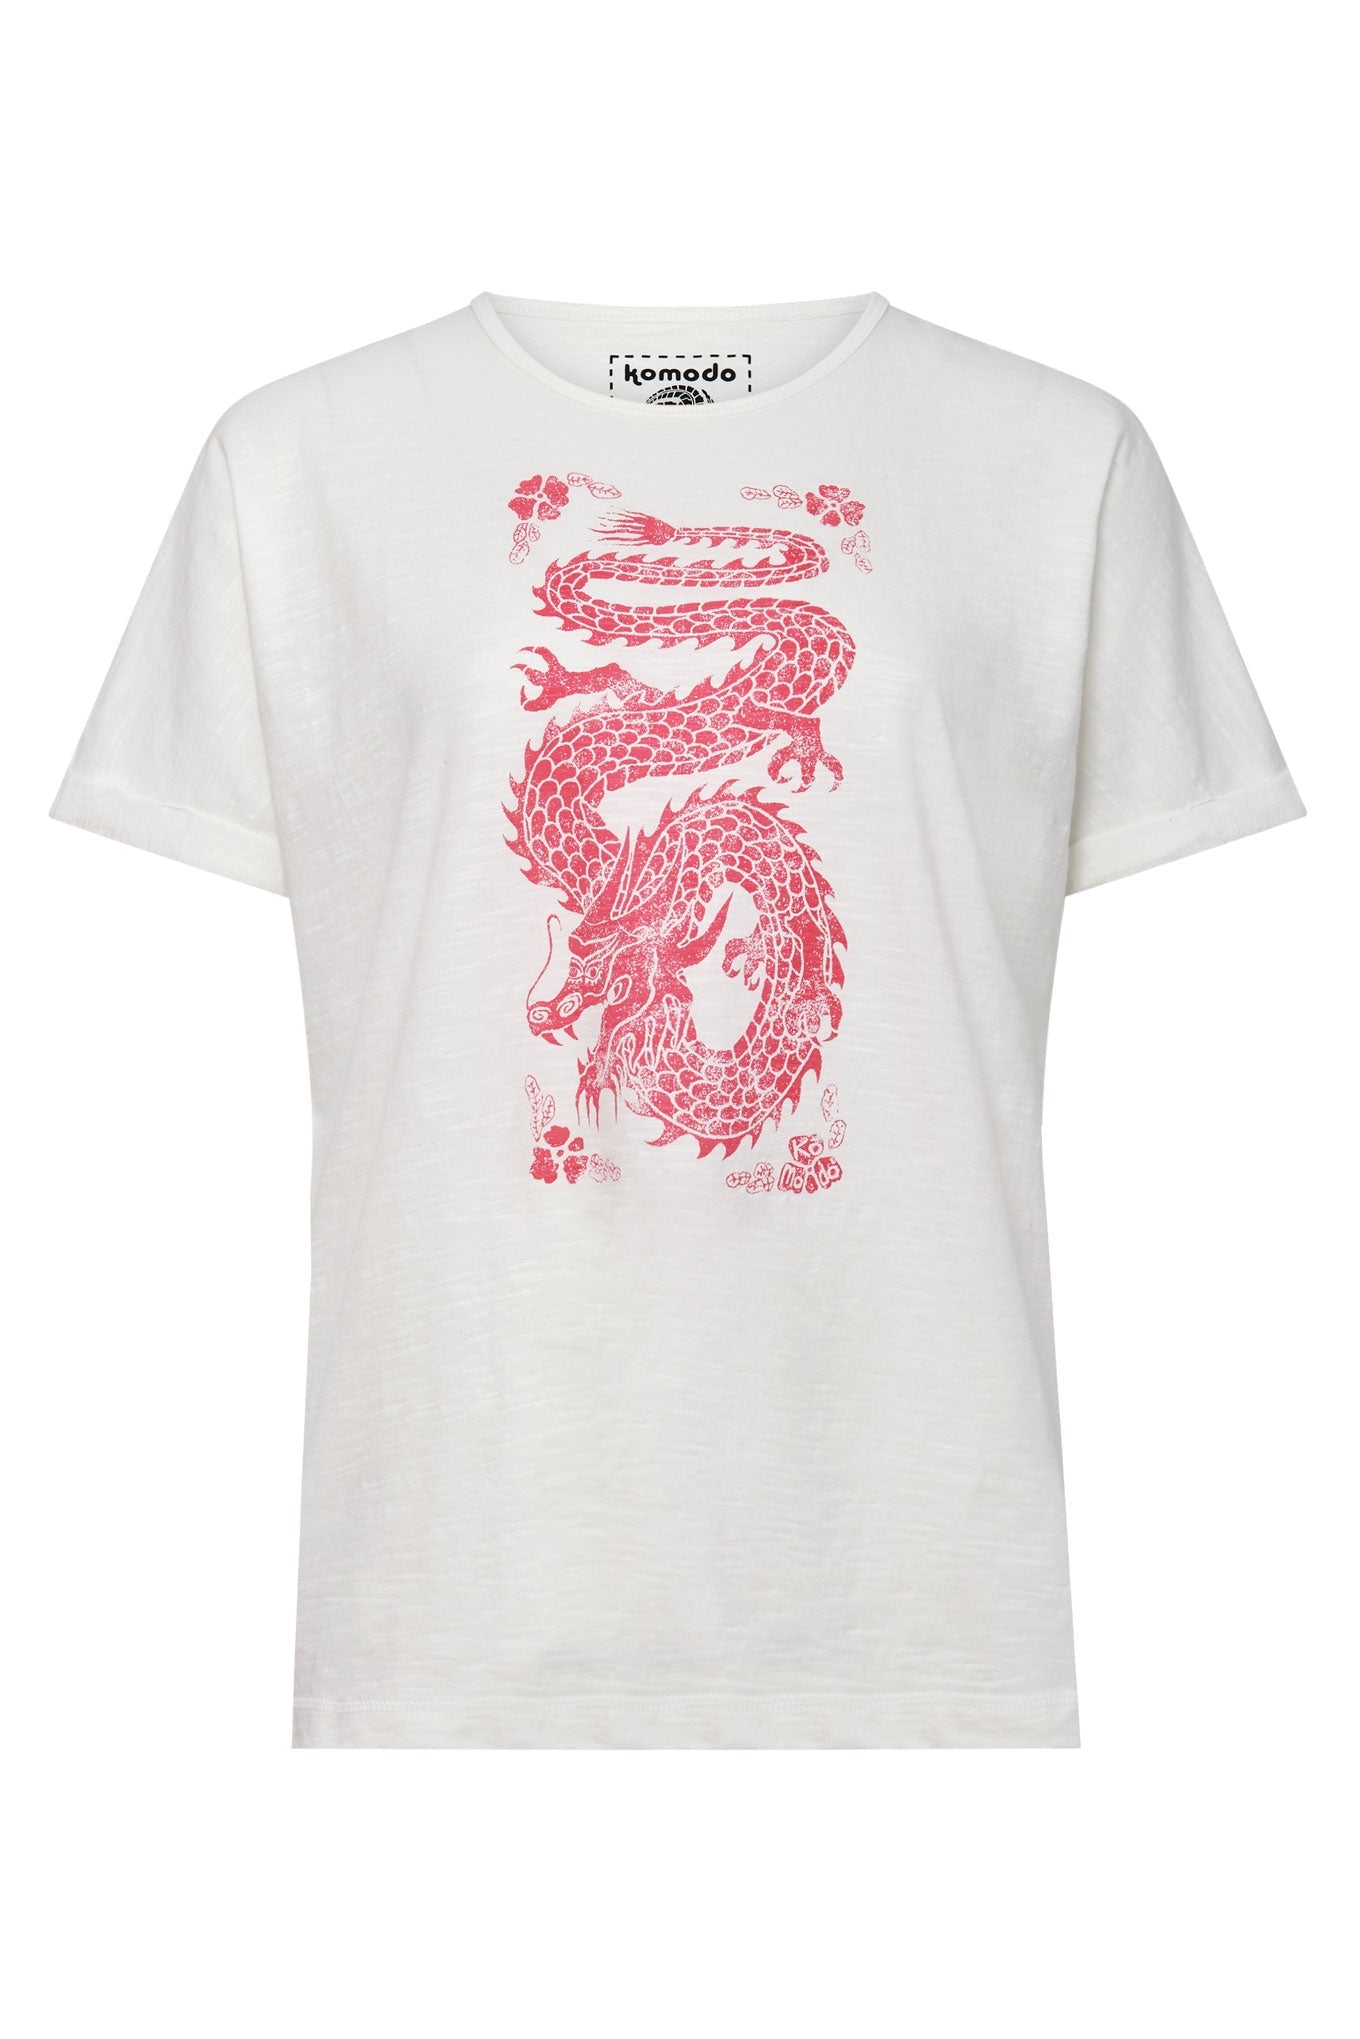 Weisses Shirt DRAGON aus 100% Bio-Baumwolle von Komodo